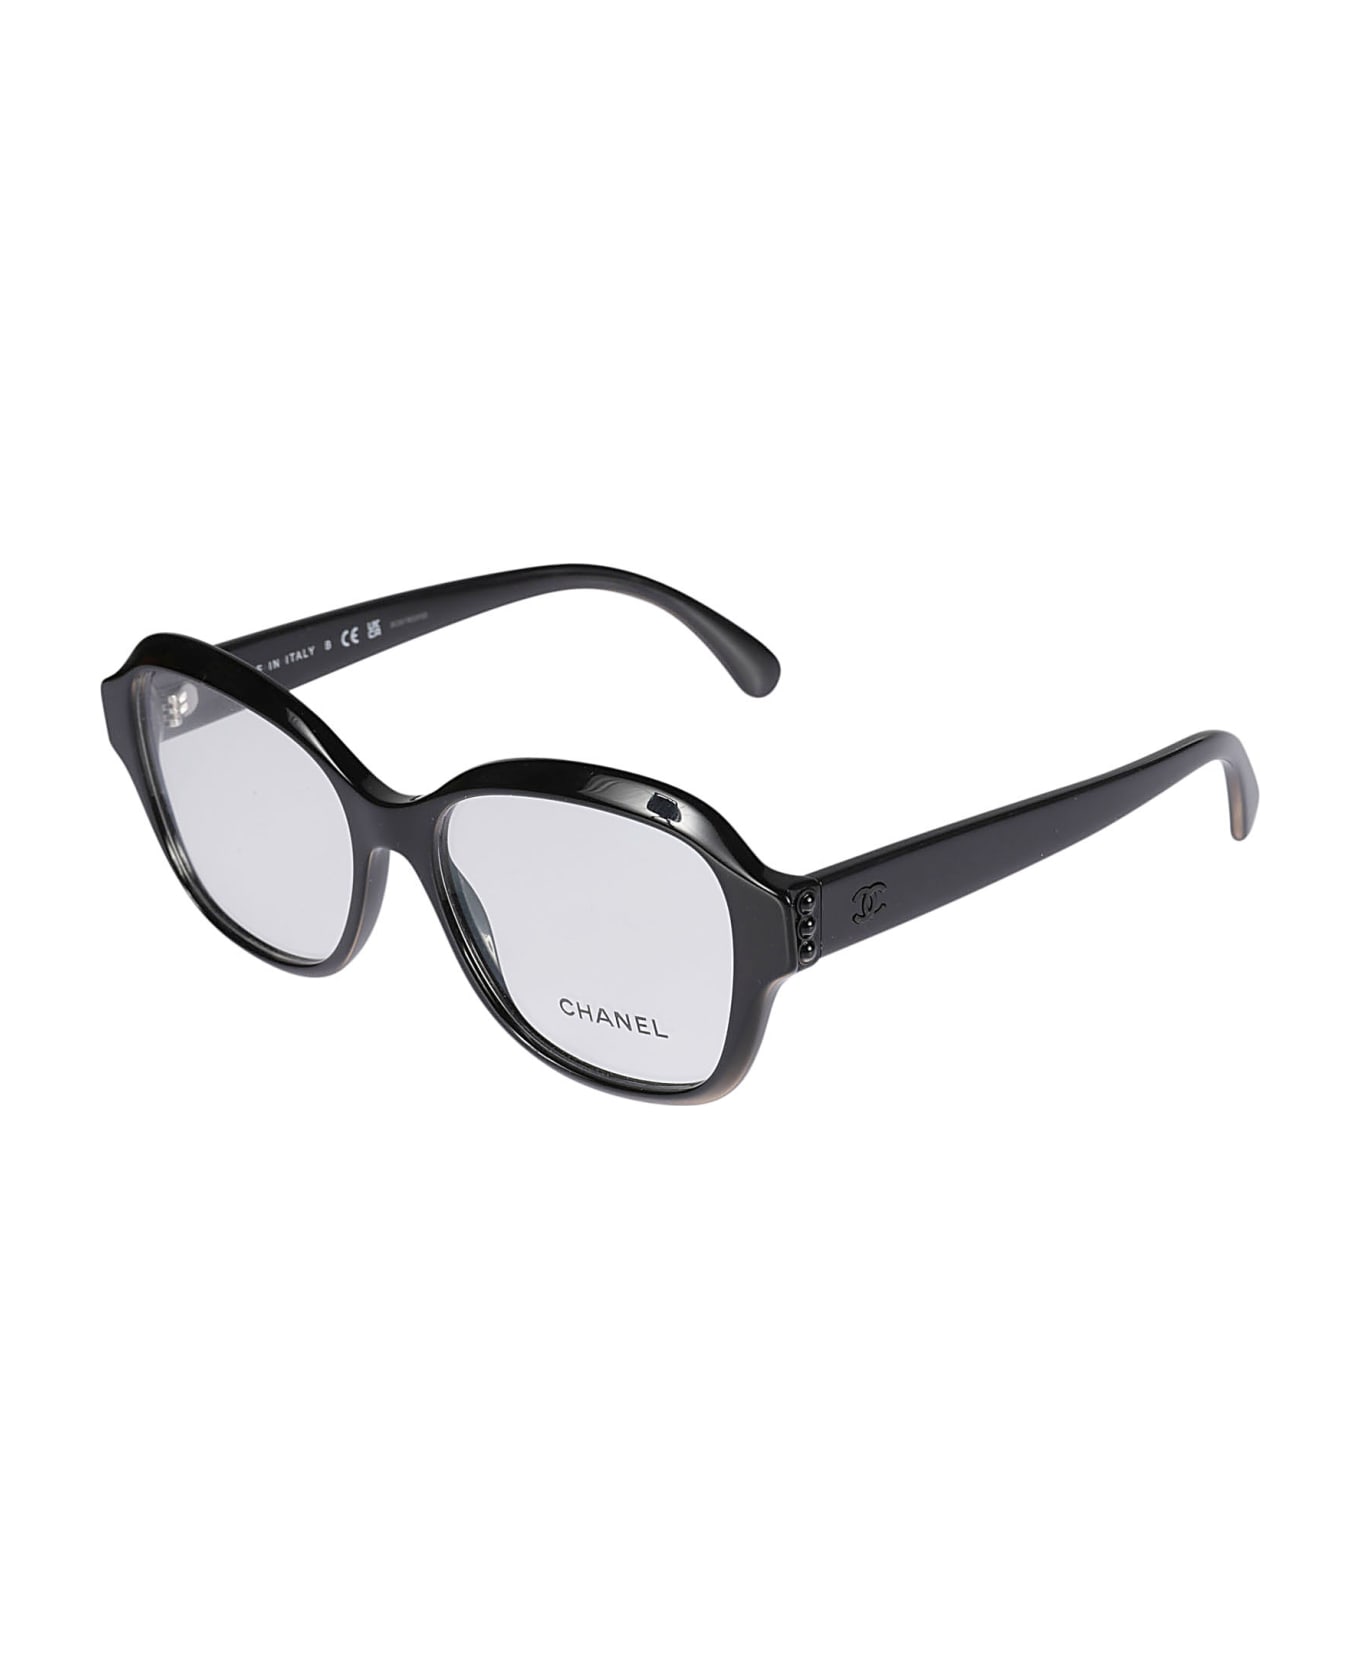 Chanel Square Glasses - C888